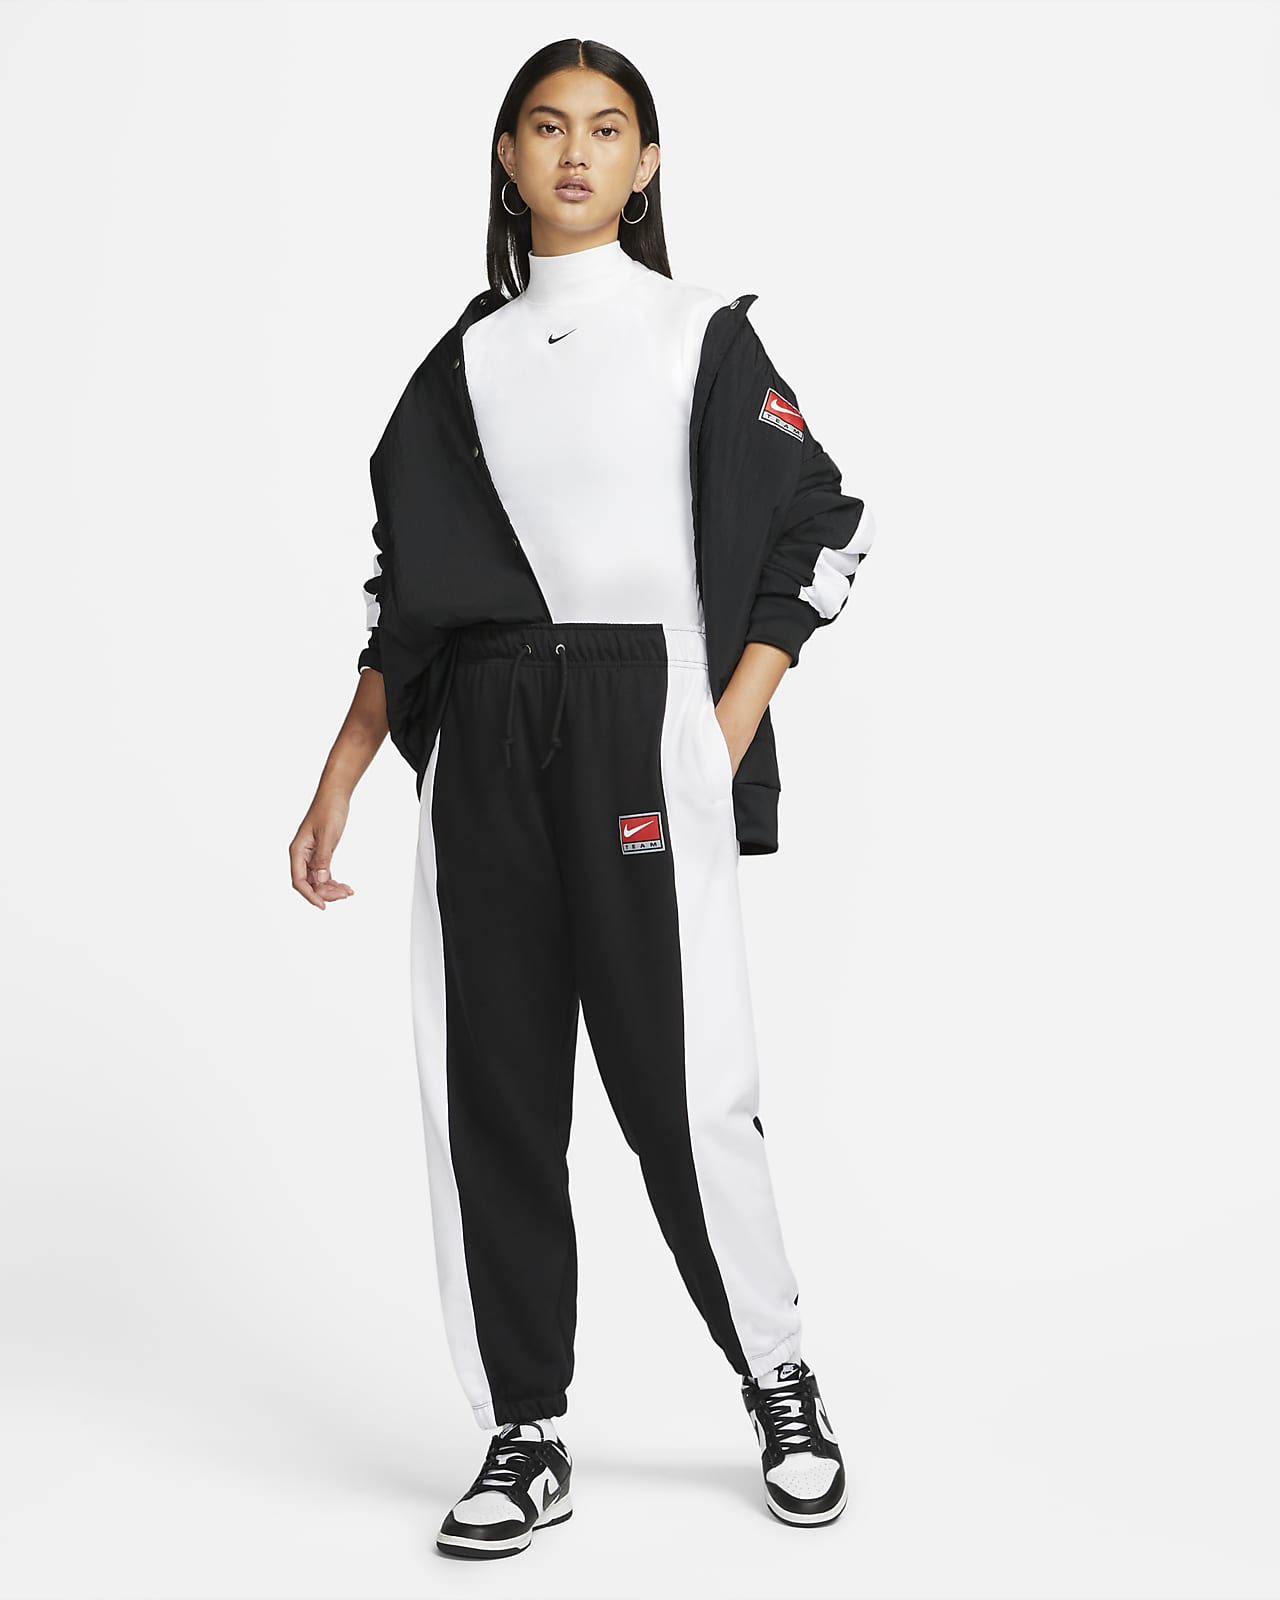 Nike Sportswear Team Nike Women's Fleece Pants